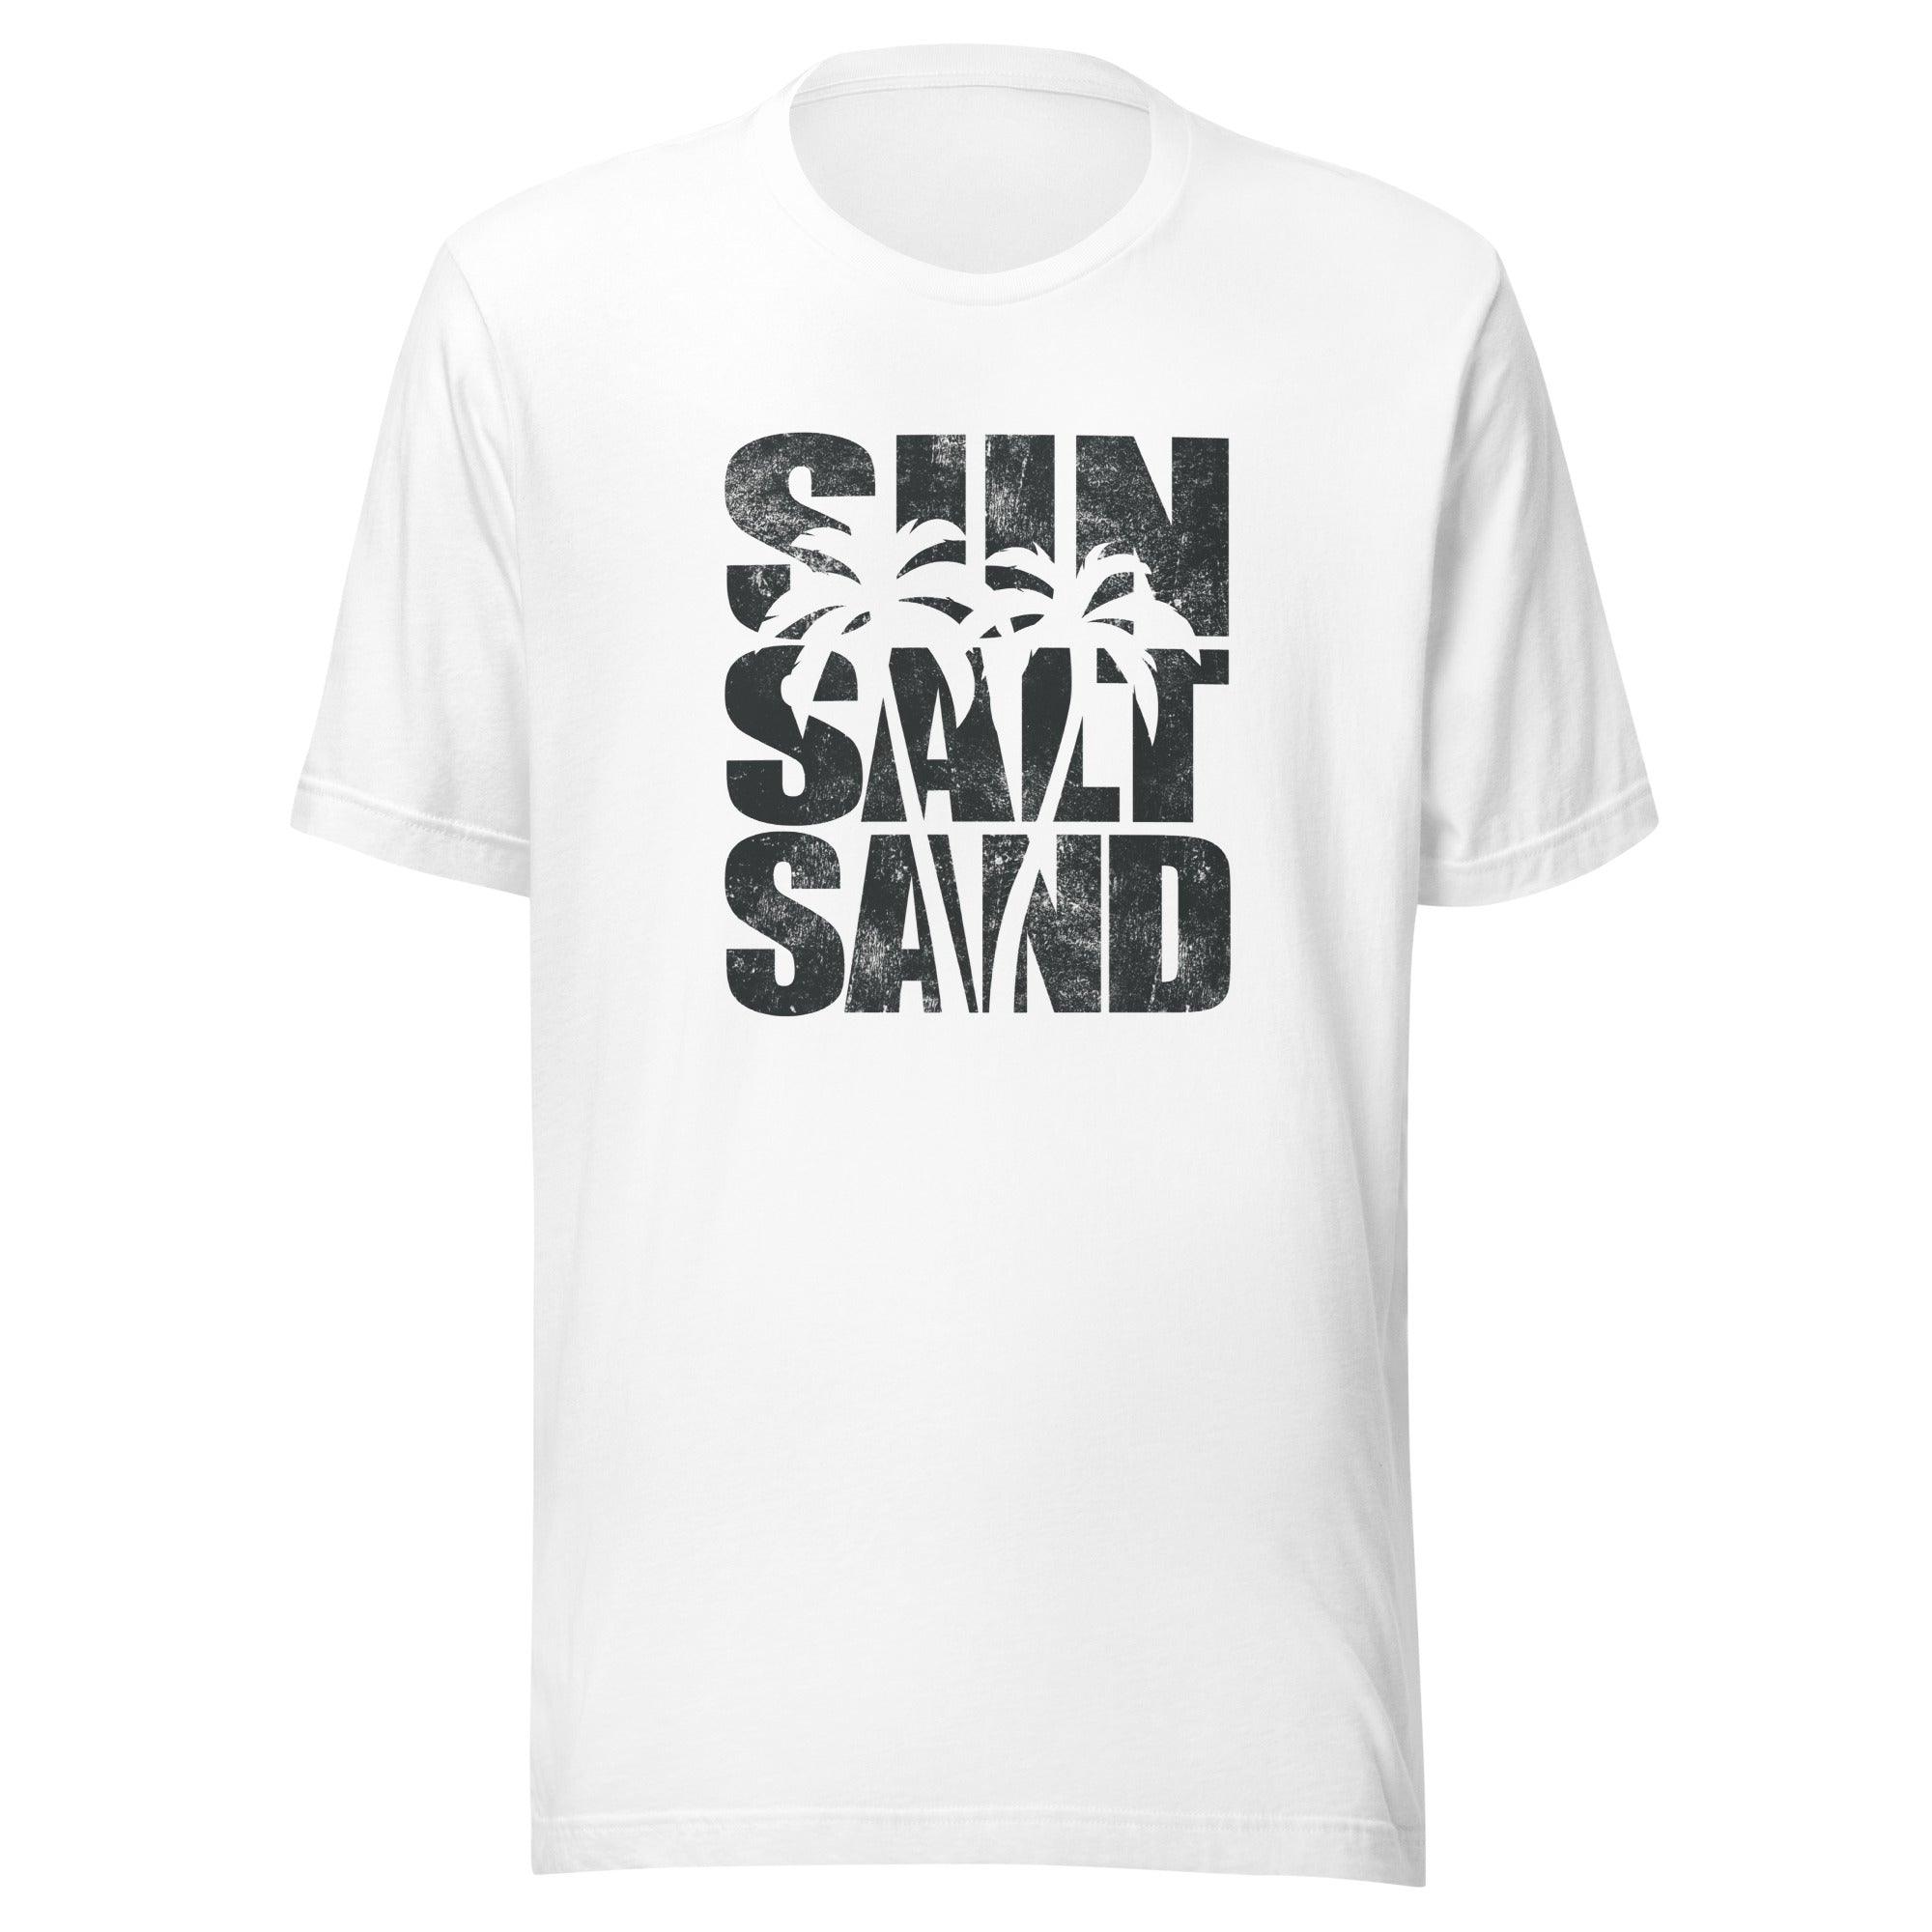 Summer T-shirt Distressed Sun Summer and Sand Short Sleeve Top - TopKoalaTee